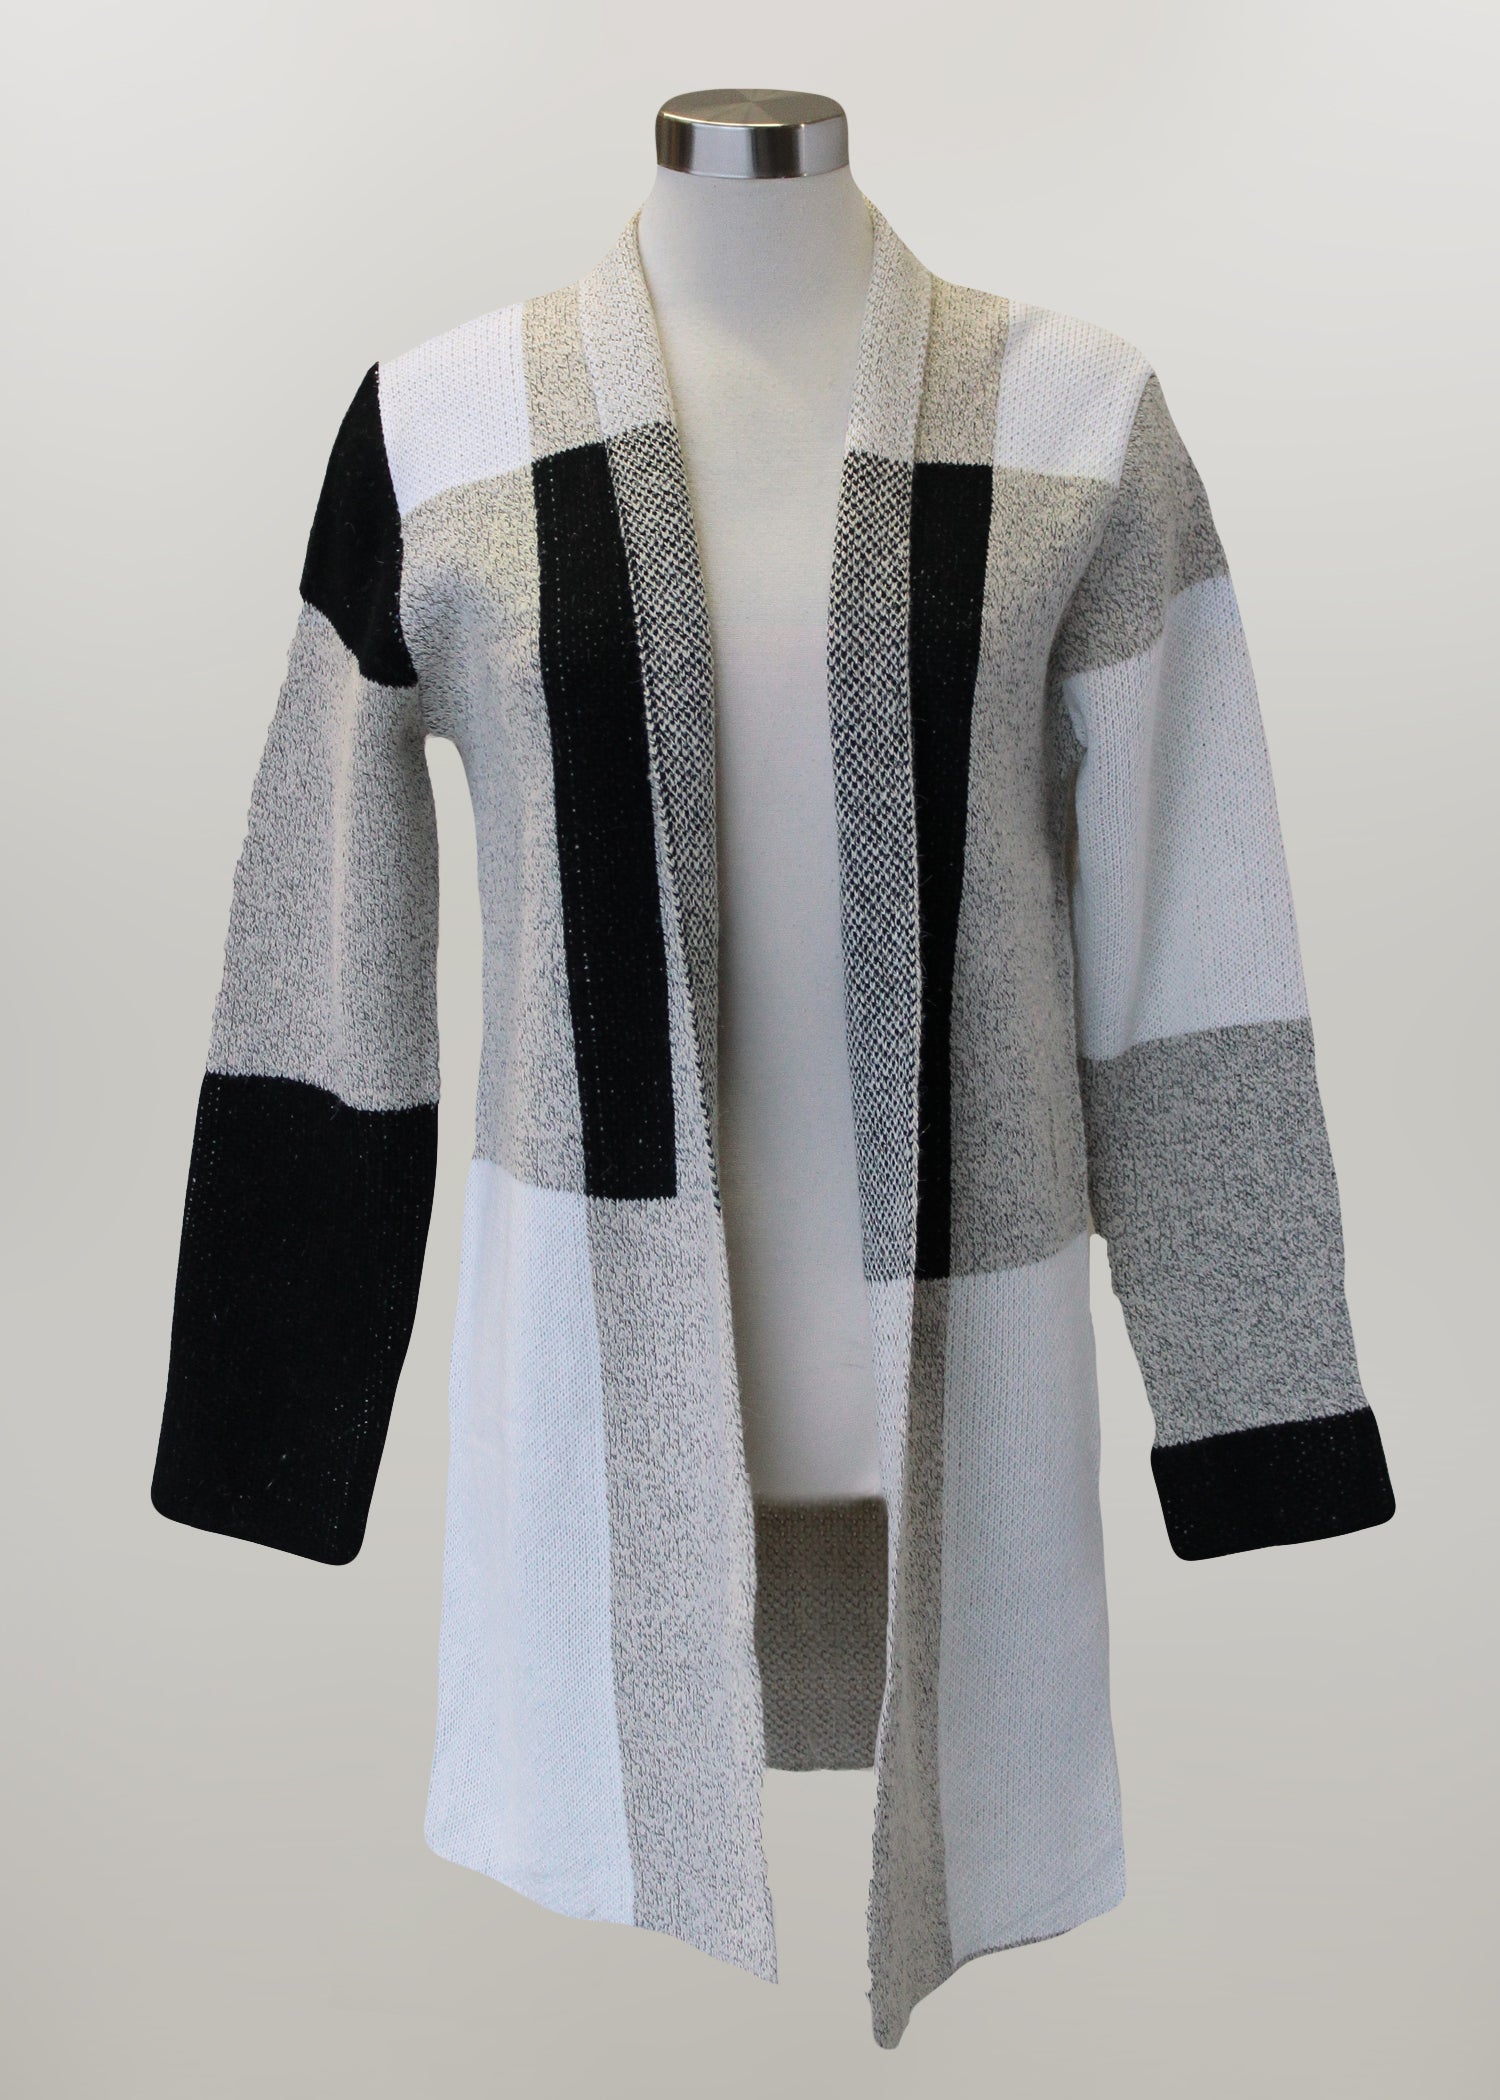 'Keren Hart' Long Sleeve Knit Duster - Black / White / Grey